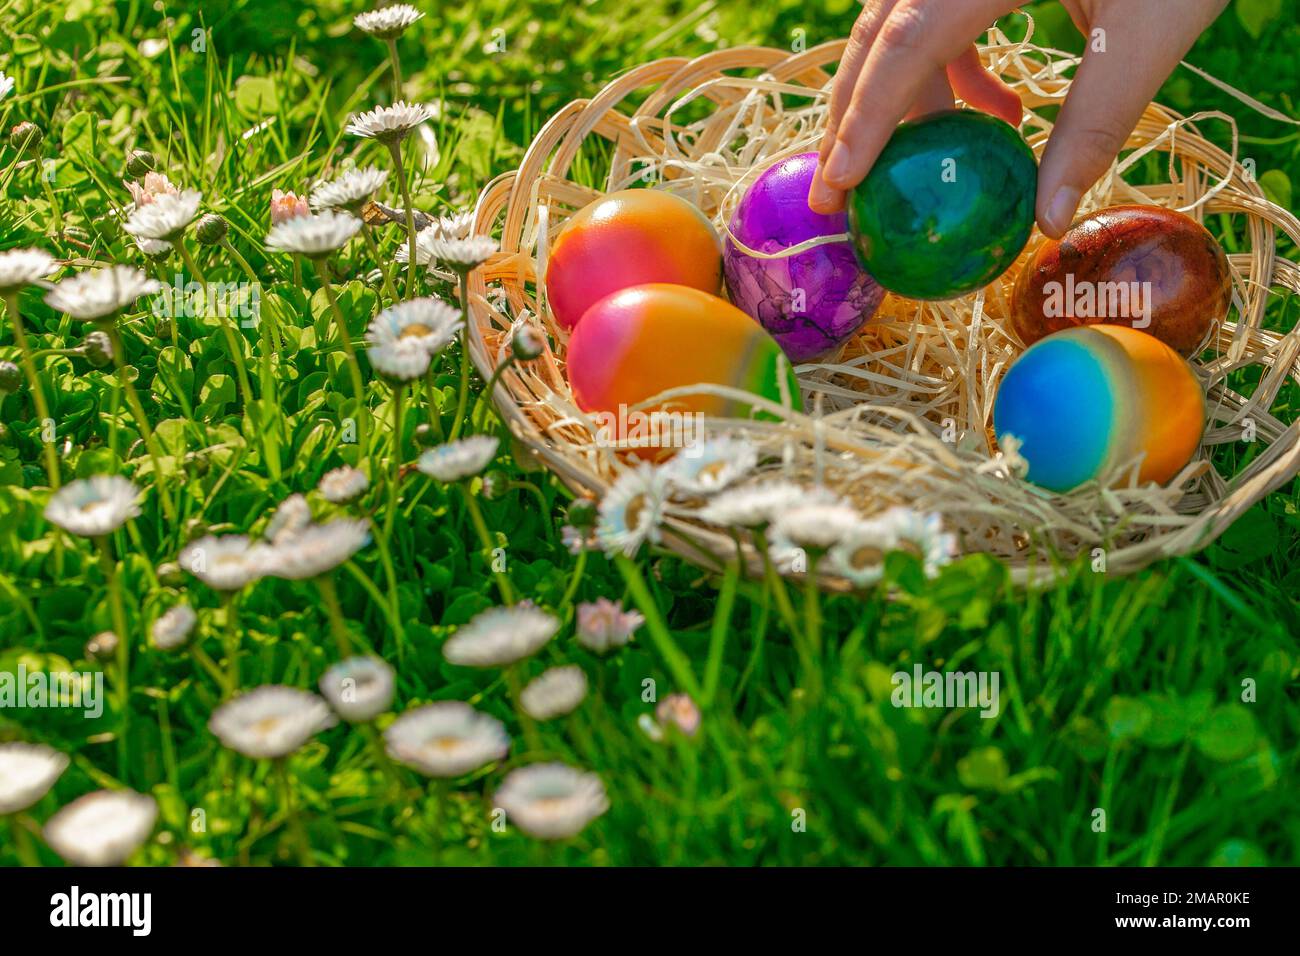 L'enfant recueille des œufs de couleur dans un pré de printemps avec des pâquerettes.chasse aux œufs de Pâques. Tradition de vacances de Pâques. Childs Hand met des œufs colorés dans un osier Banque D'Images